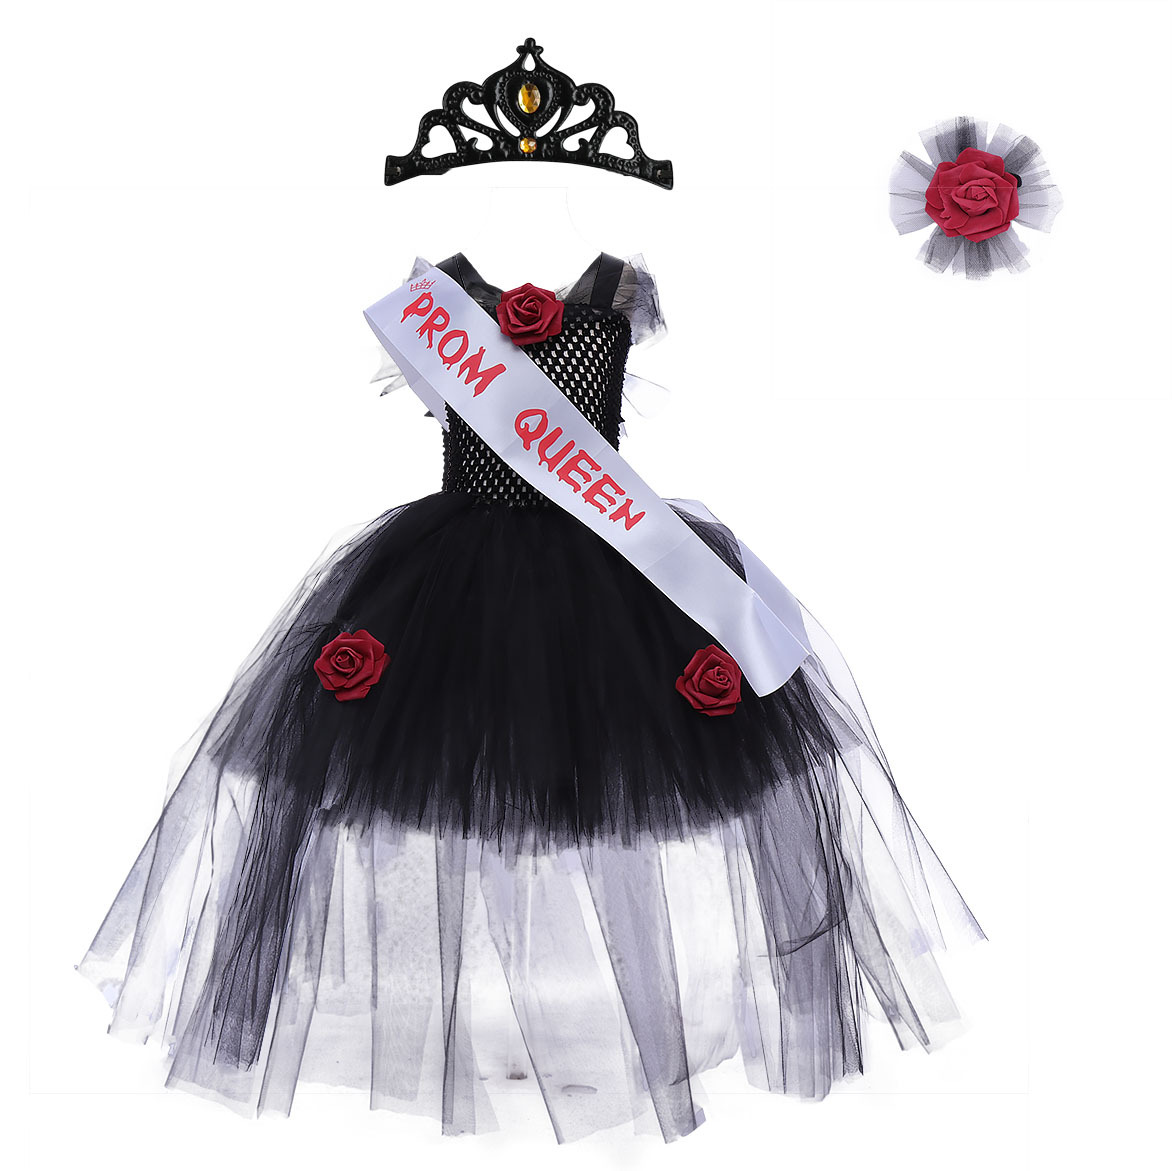 Black dress   ribbon   crown   corsage